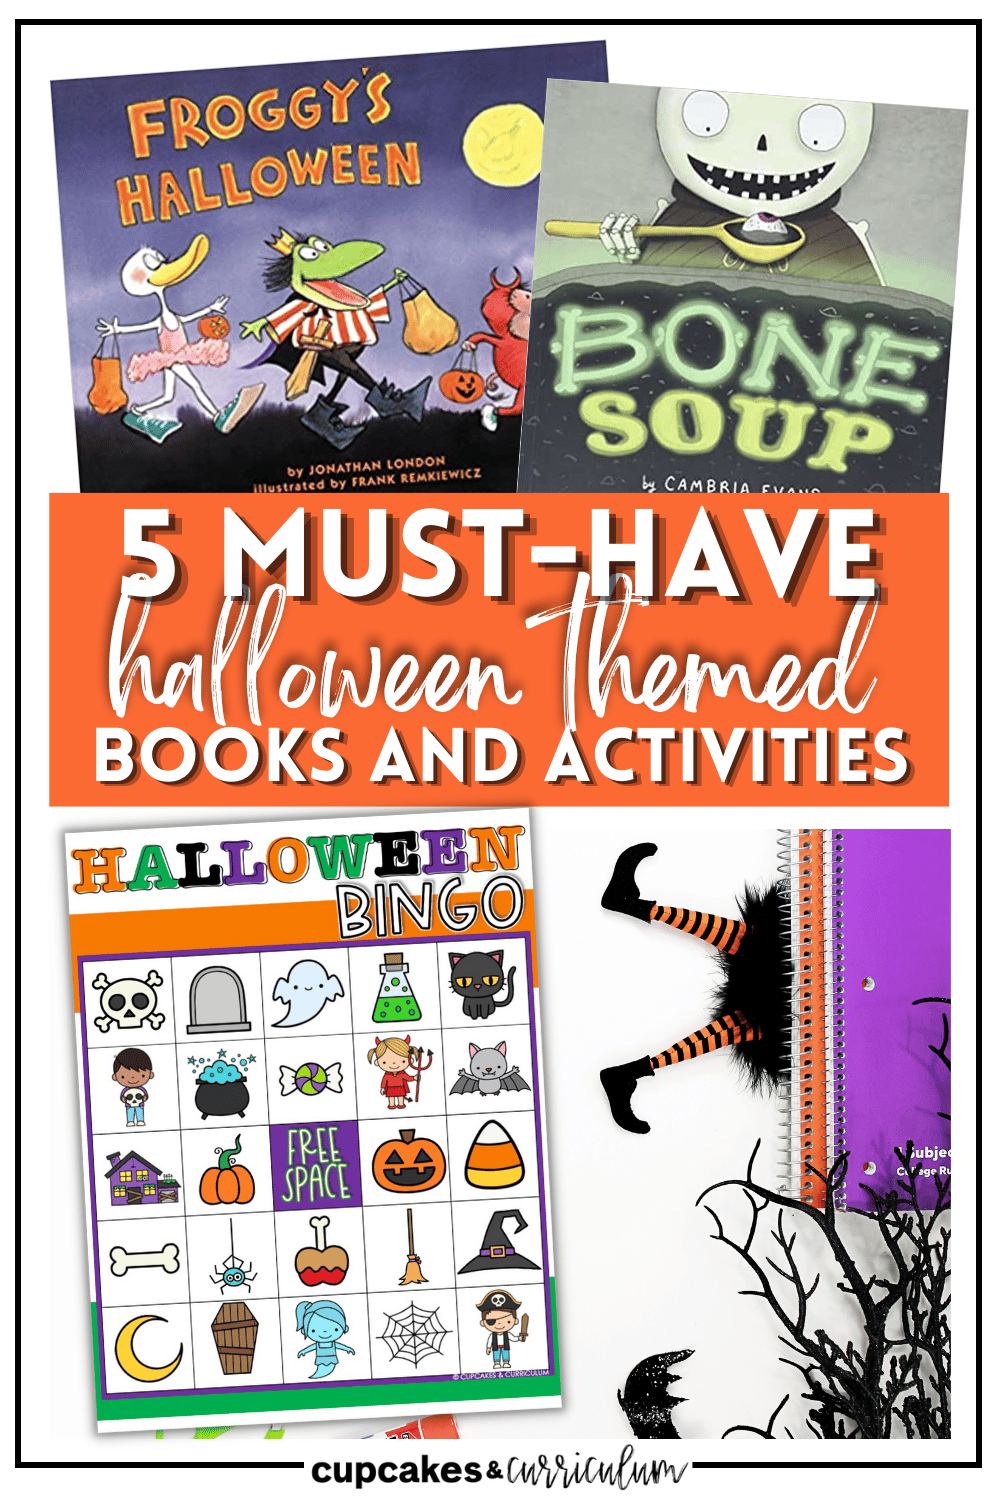 5 Must-Have Halloween Books + Activities